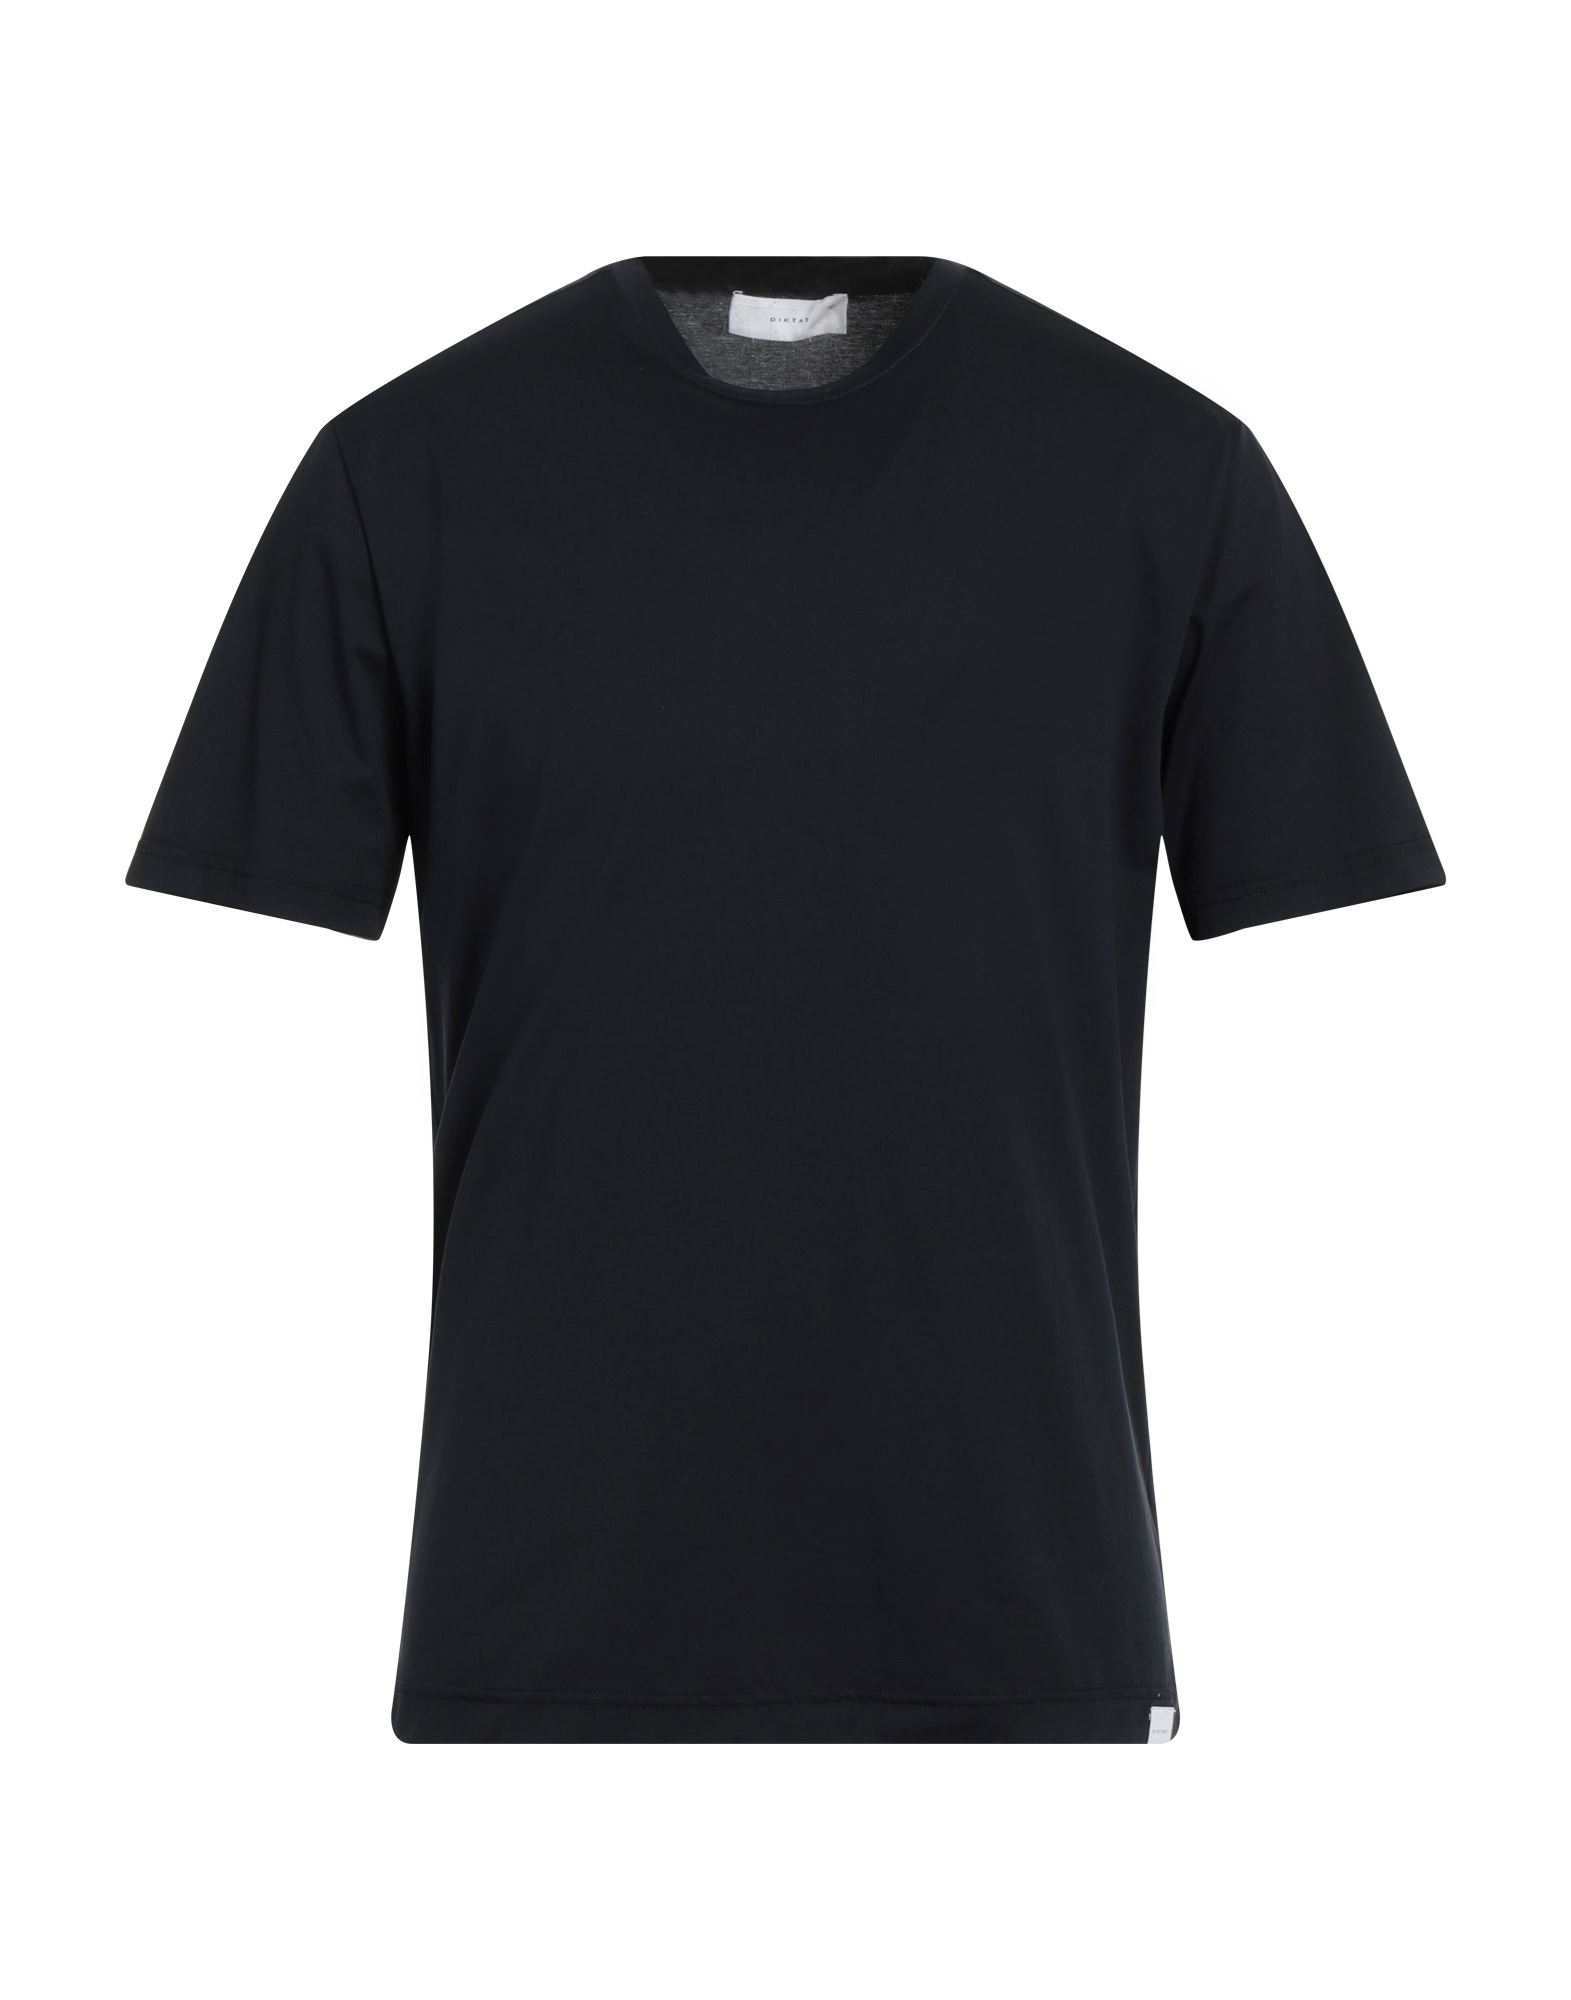 DIKTAT T-shirts Herren Nachtblau von DIKTAT